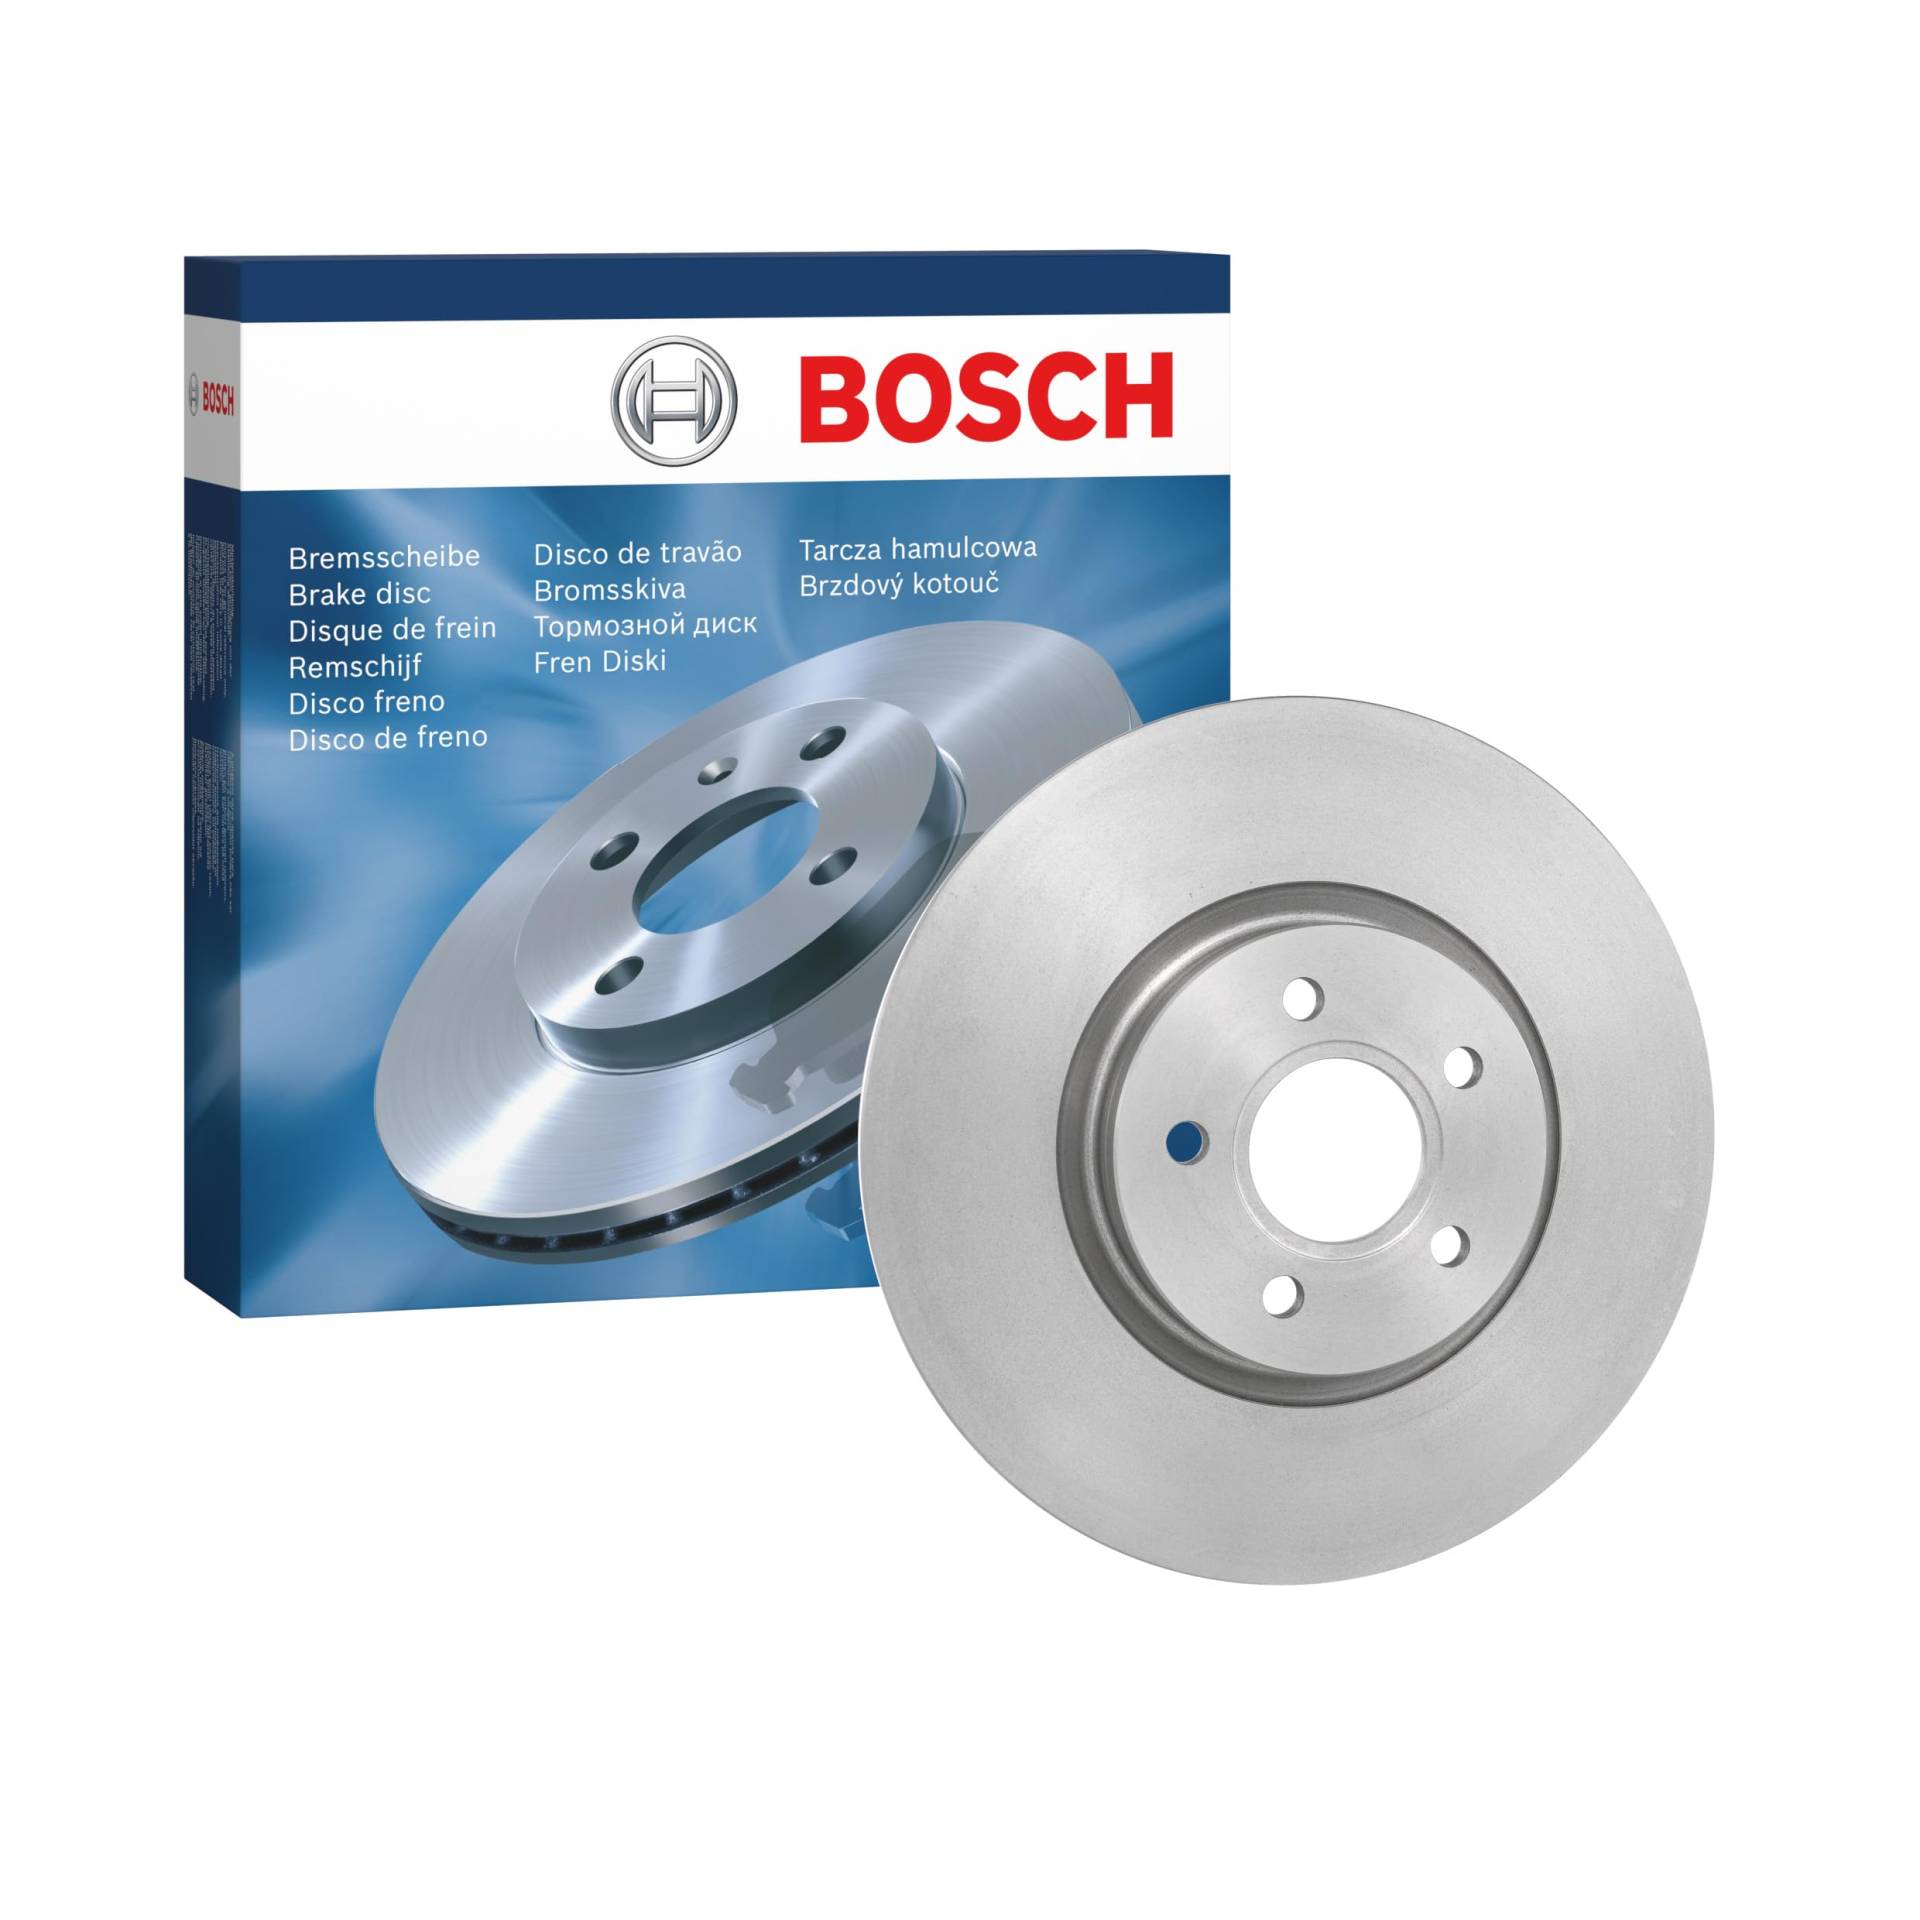 Bosch BD1172 Bremsscheiben - Vorderachse - ECE-R90 Zertifizierung - eine Bremsscheibe von Bosch Automotive